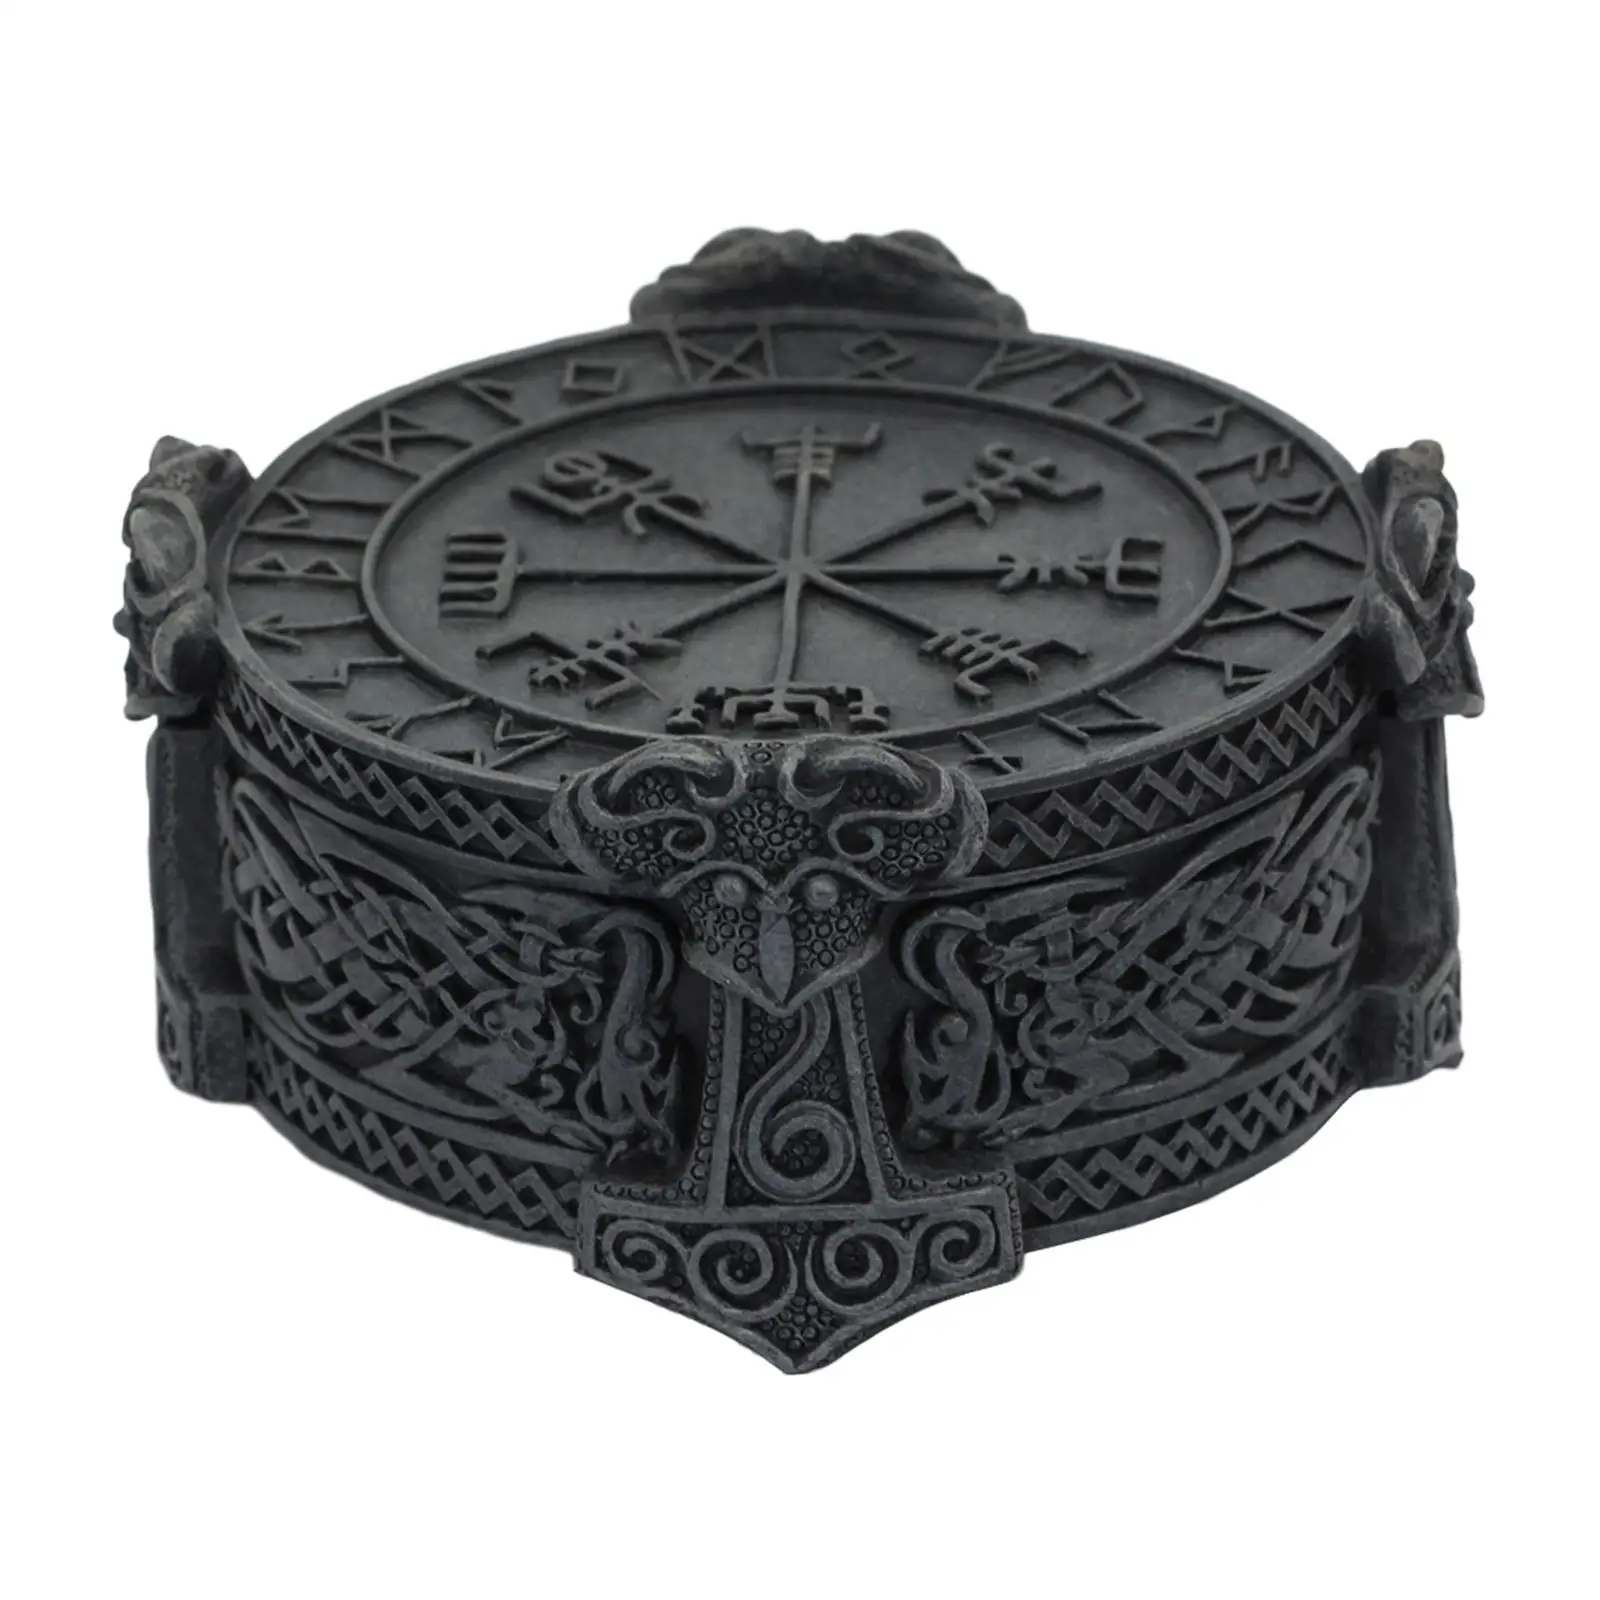 Viking Trinket Caixa De Jóias, enfeites De Mesa, suporte De Exibição, Home Decor Centerpiece, Colares Colecionáveis, Presente De Aniversário